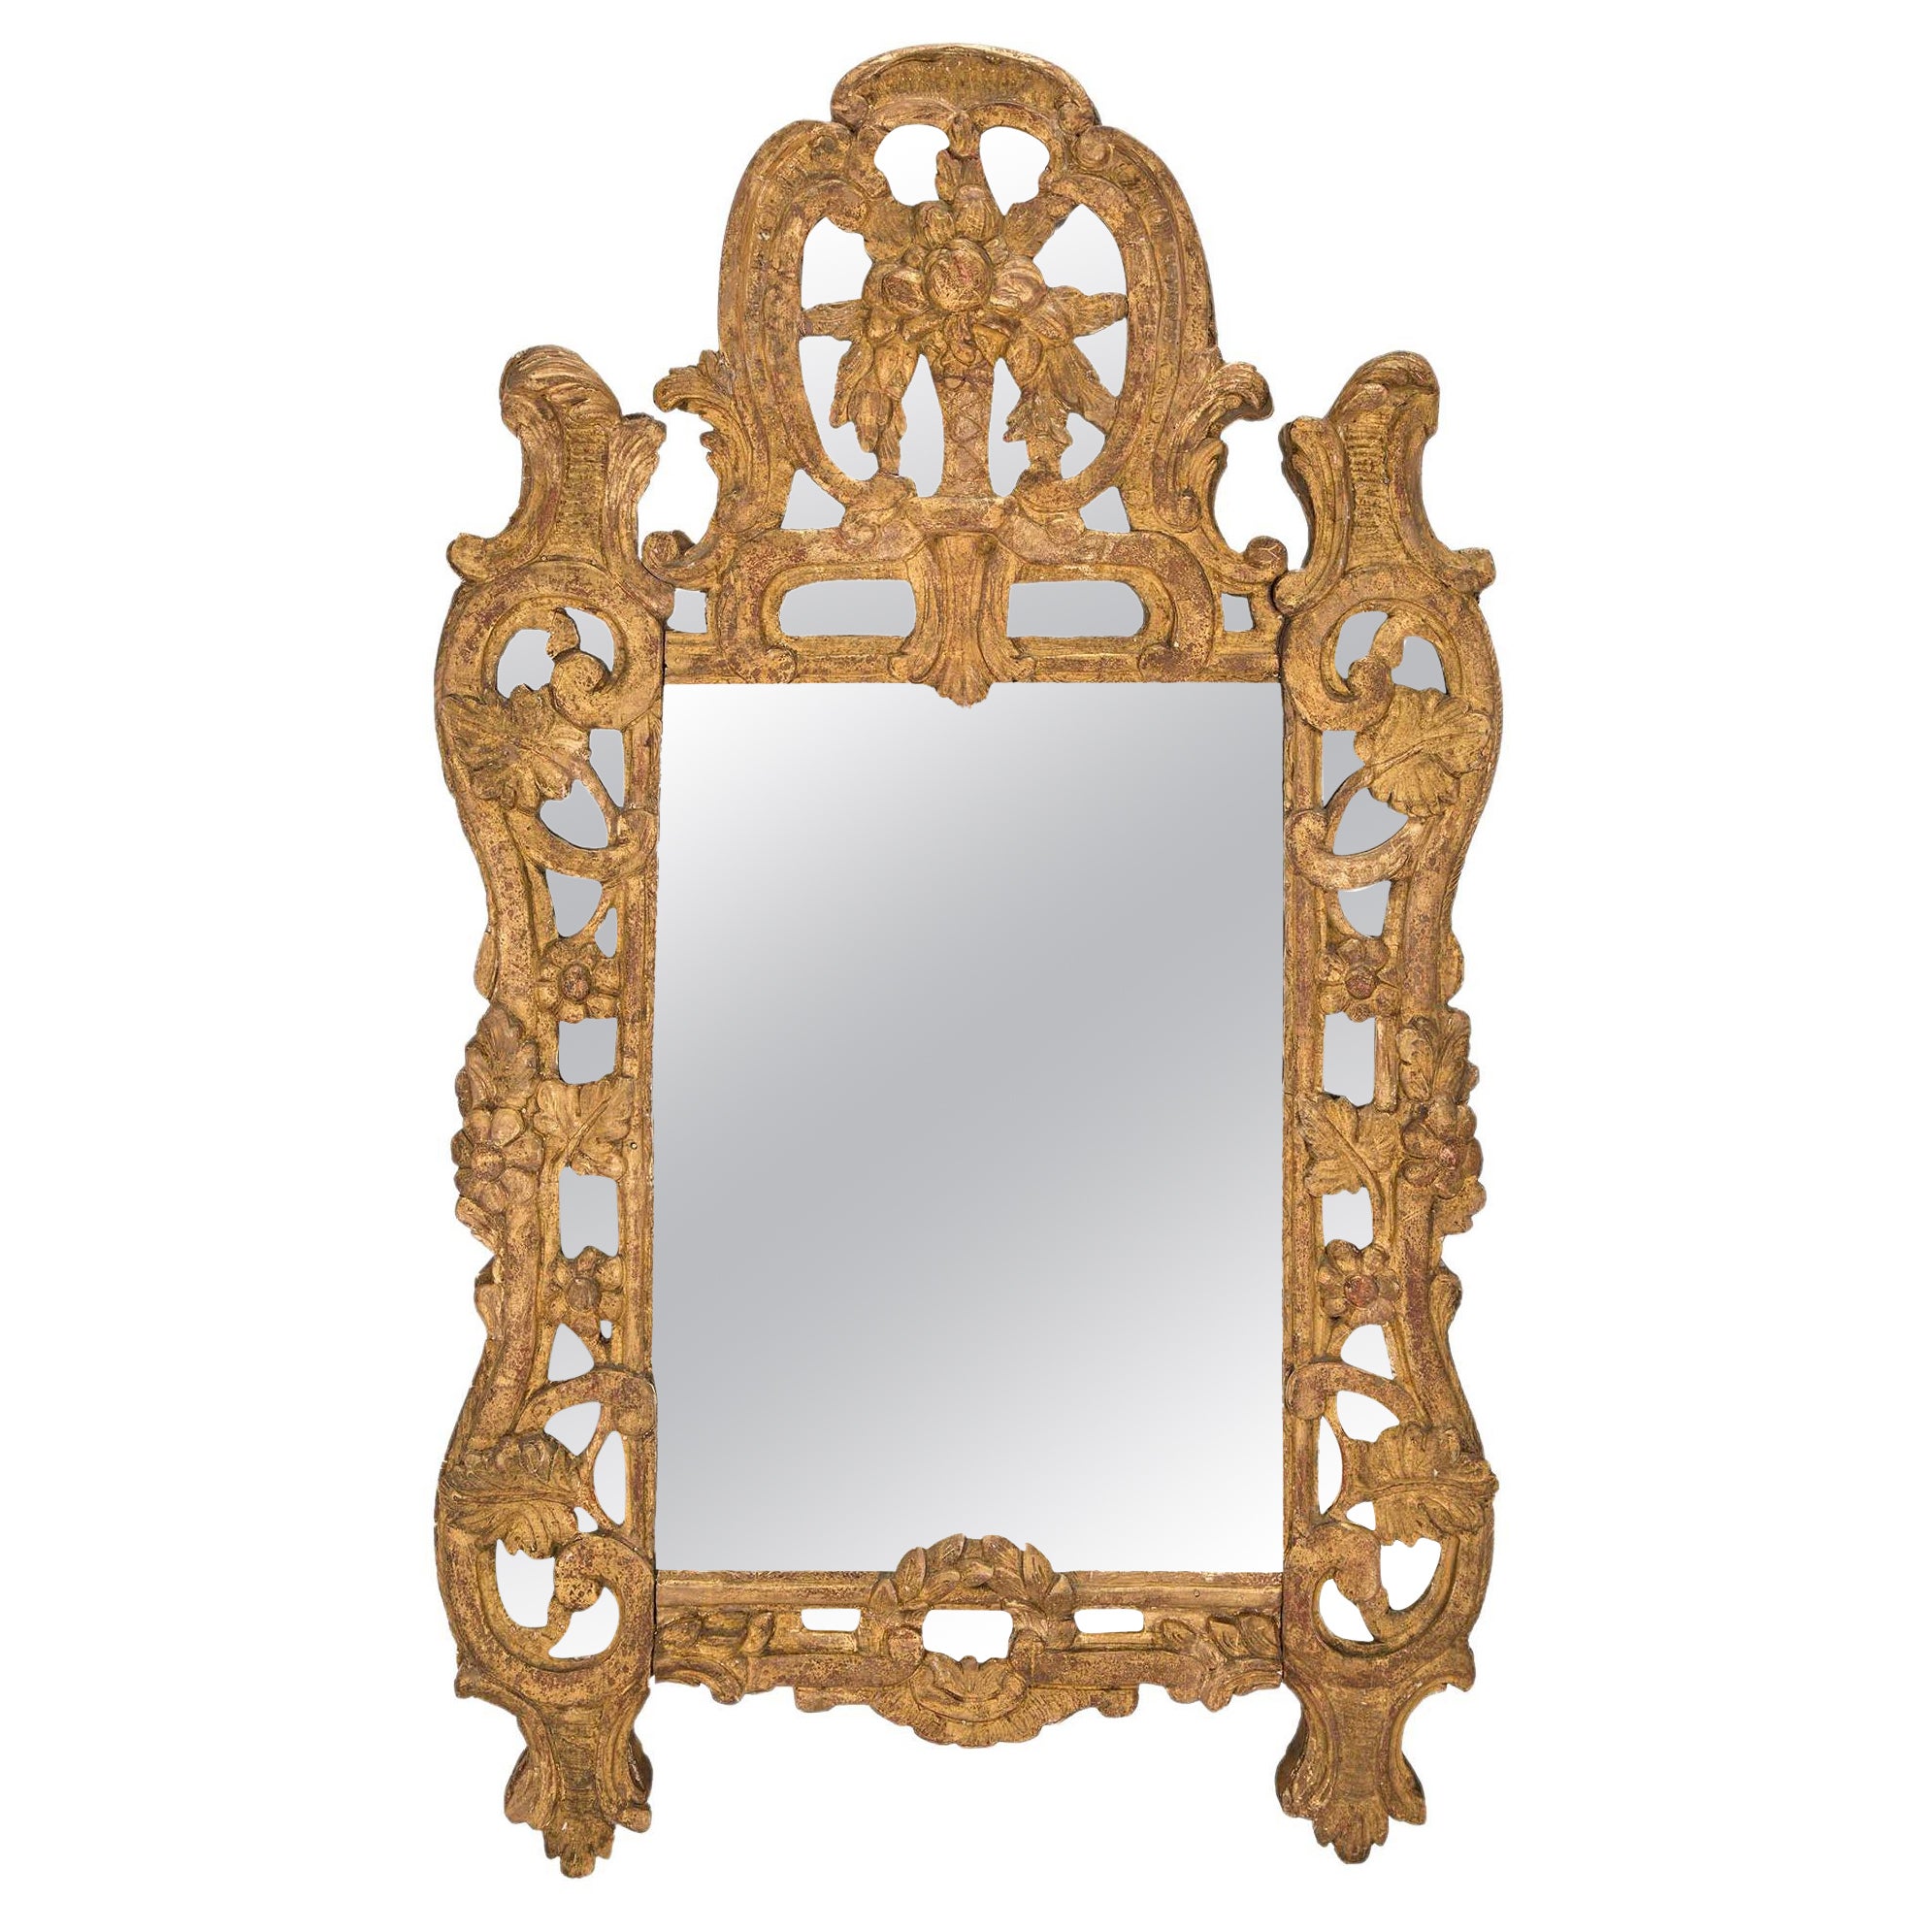 Miroir en bois doré français du XVIIIe siècle de la période de la Rgence